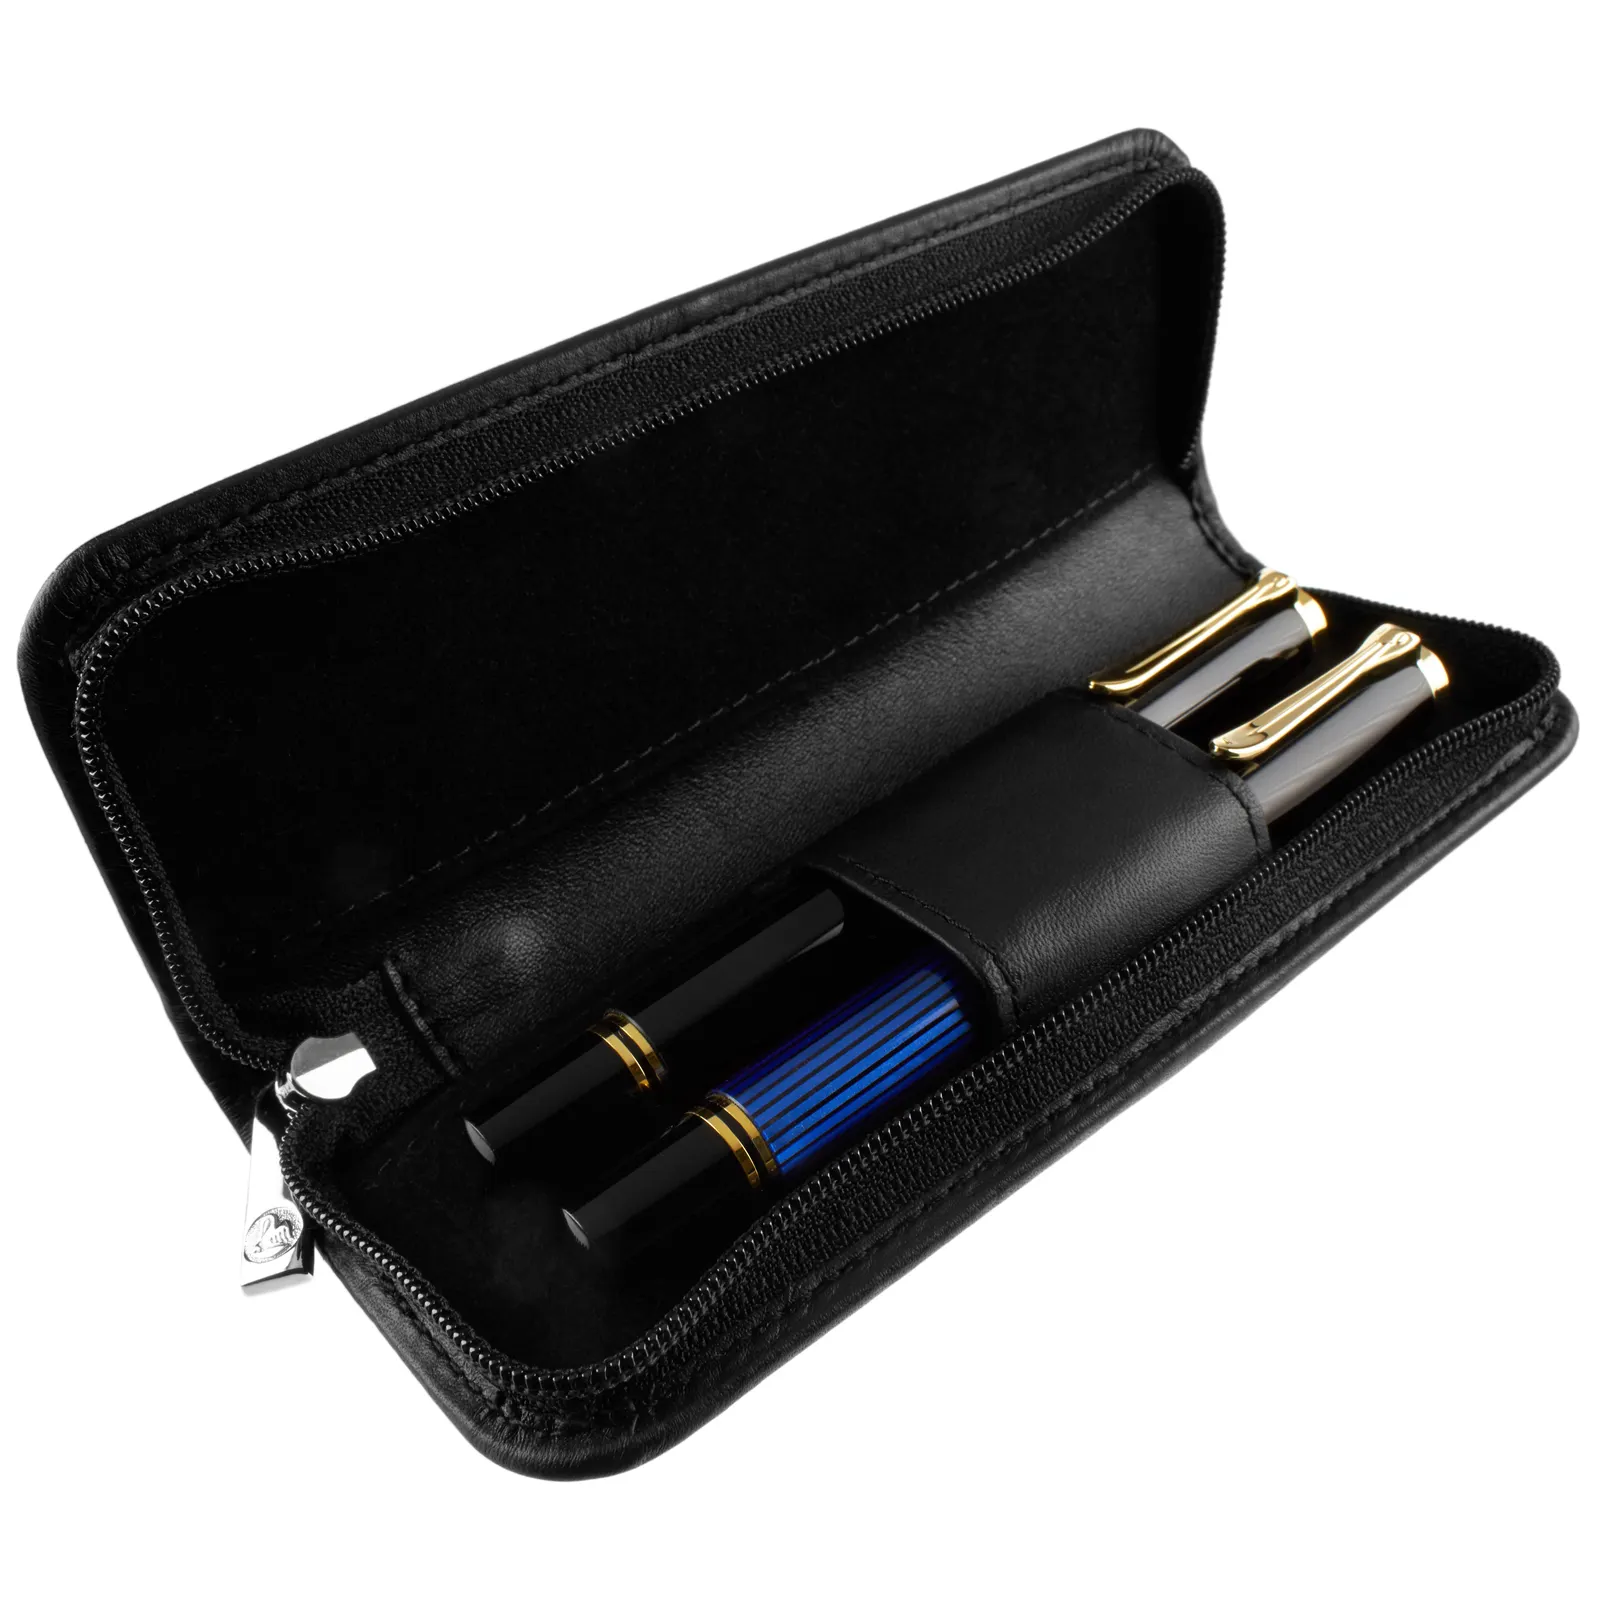 Schwarze Farbe PU-Leder-Stifte tui von bester Qualität mit der Möglichkeit, 2-Stift und Reiß verschluss zum besten Preis auf dem Markt zu halten Super-Angebot